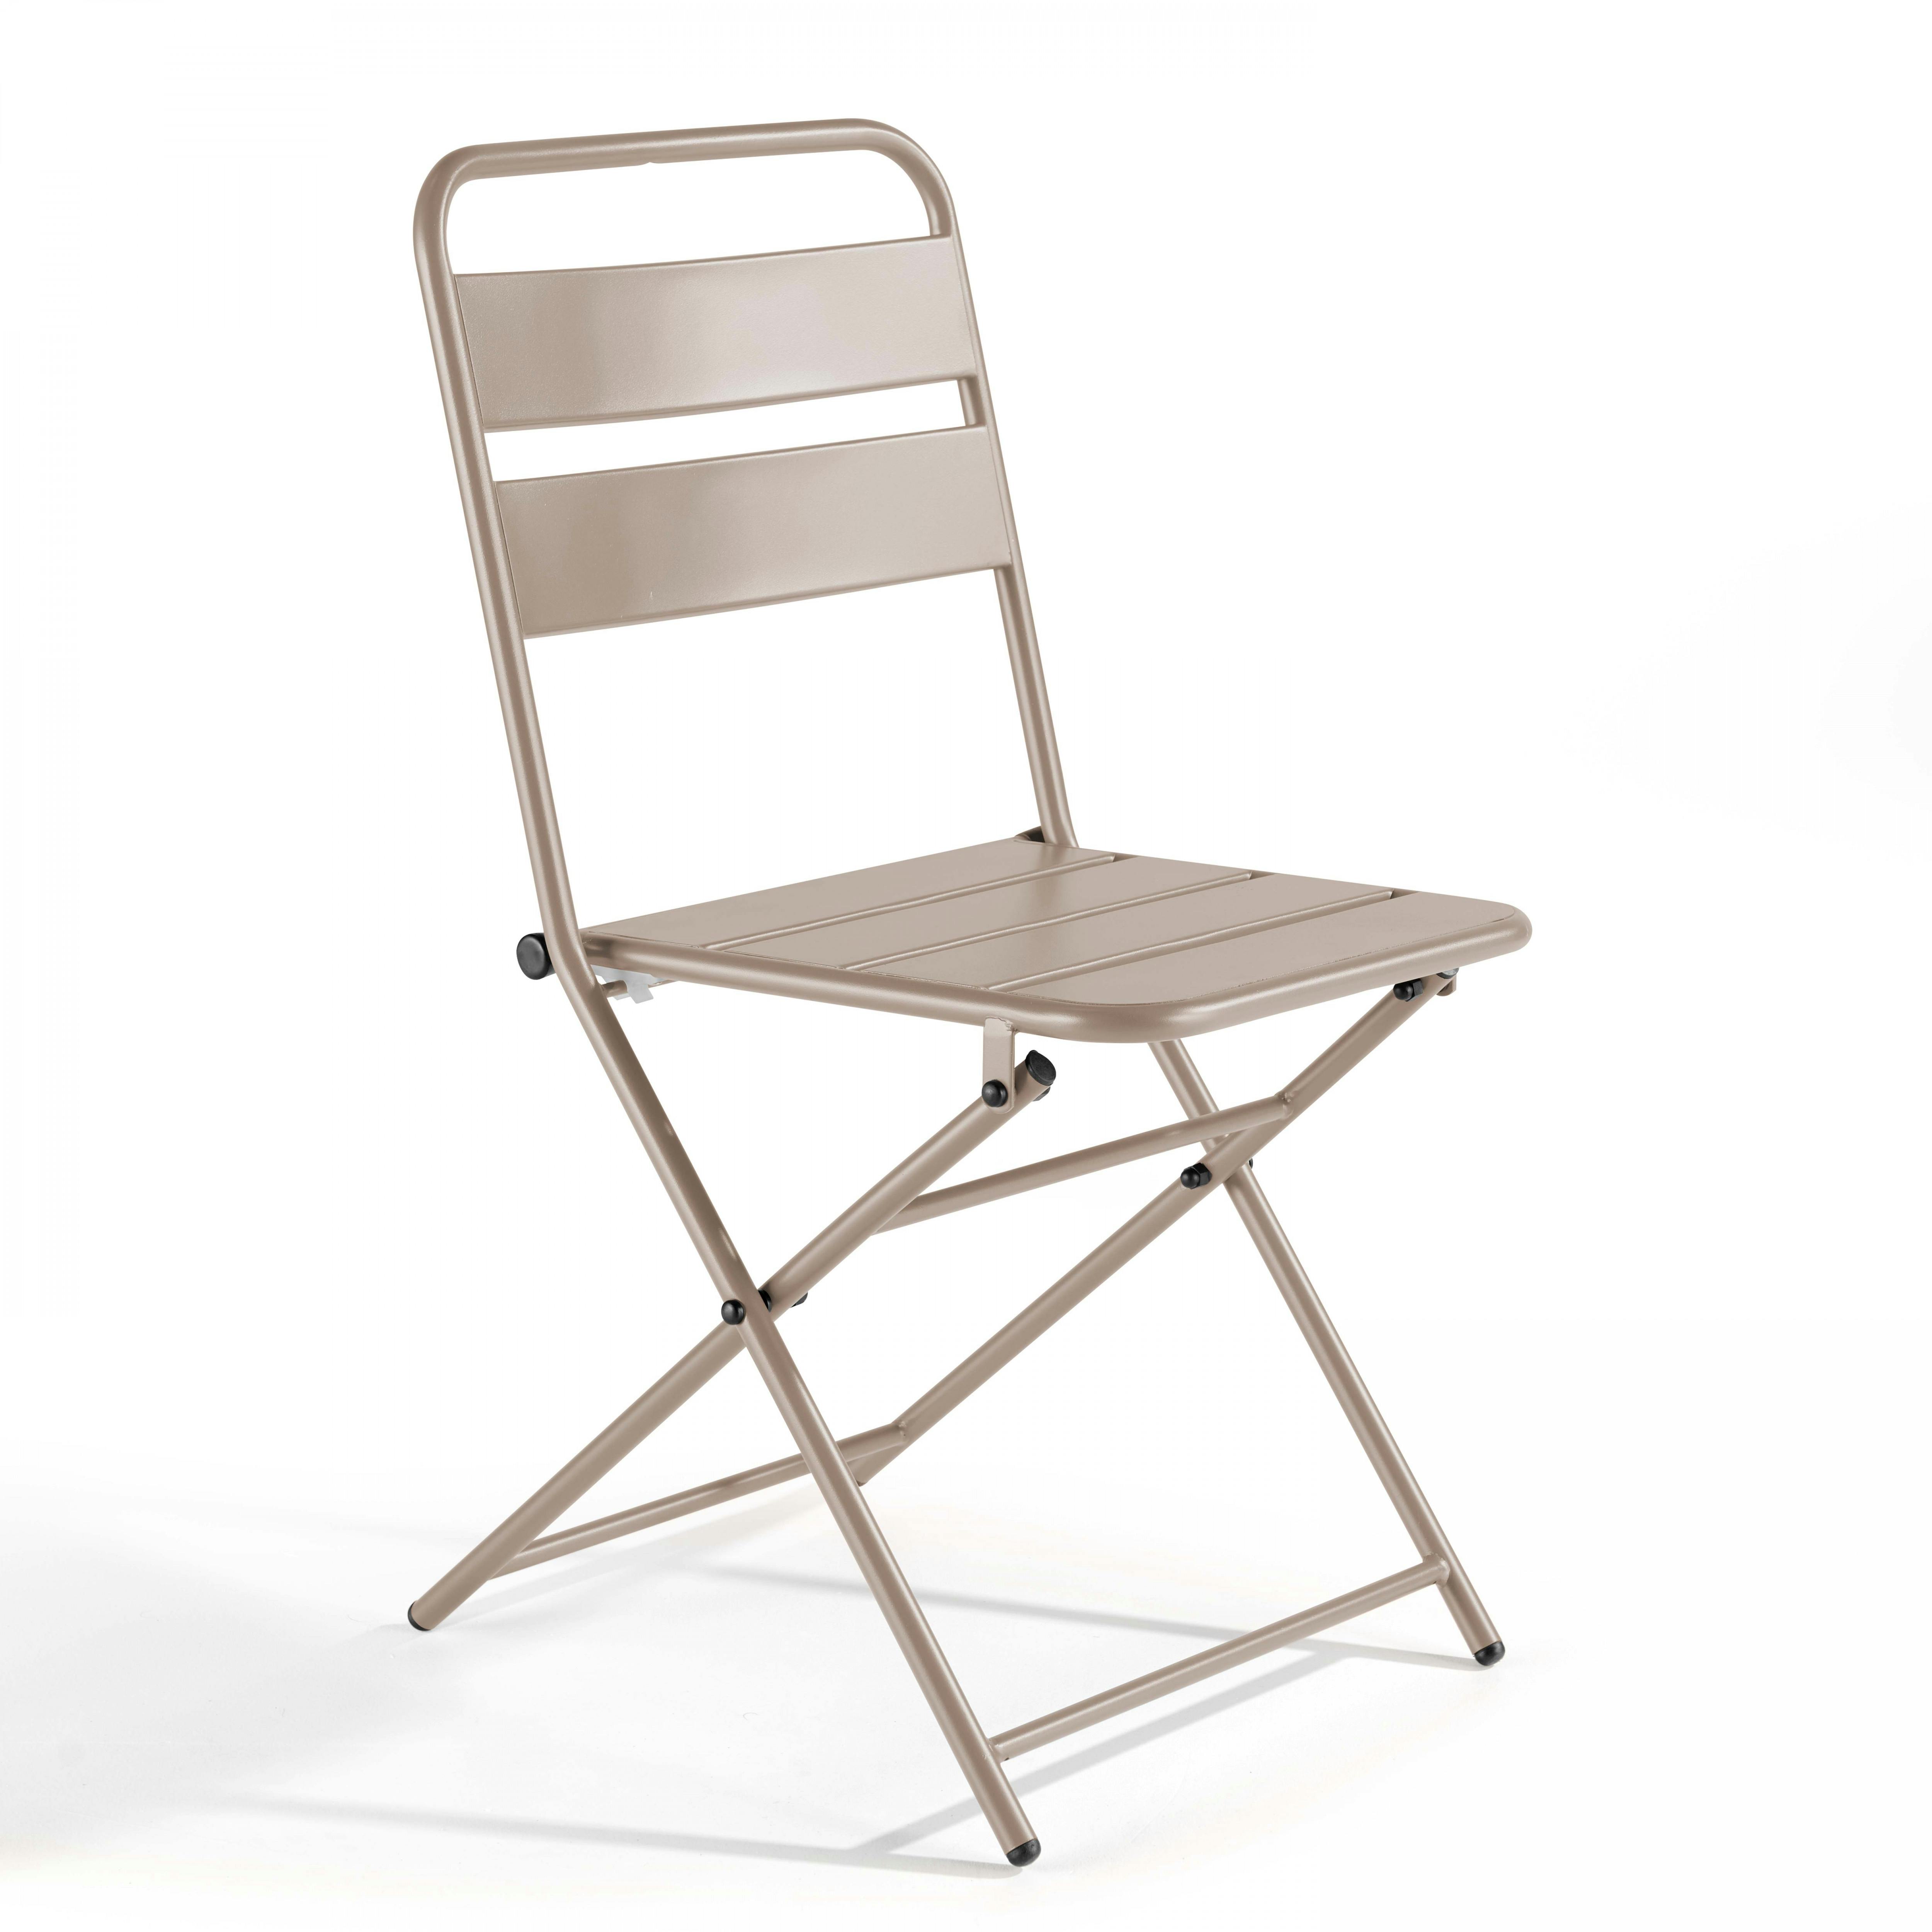 Estosa - Ensemble table et chaises d'extérieur pliantes Mia taupe